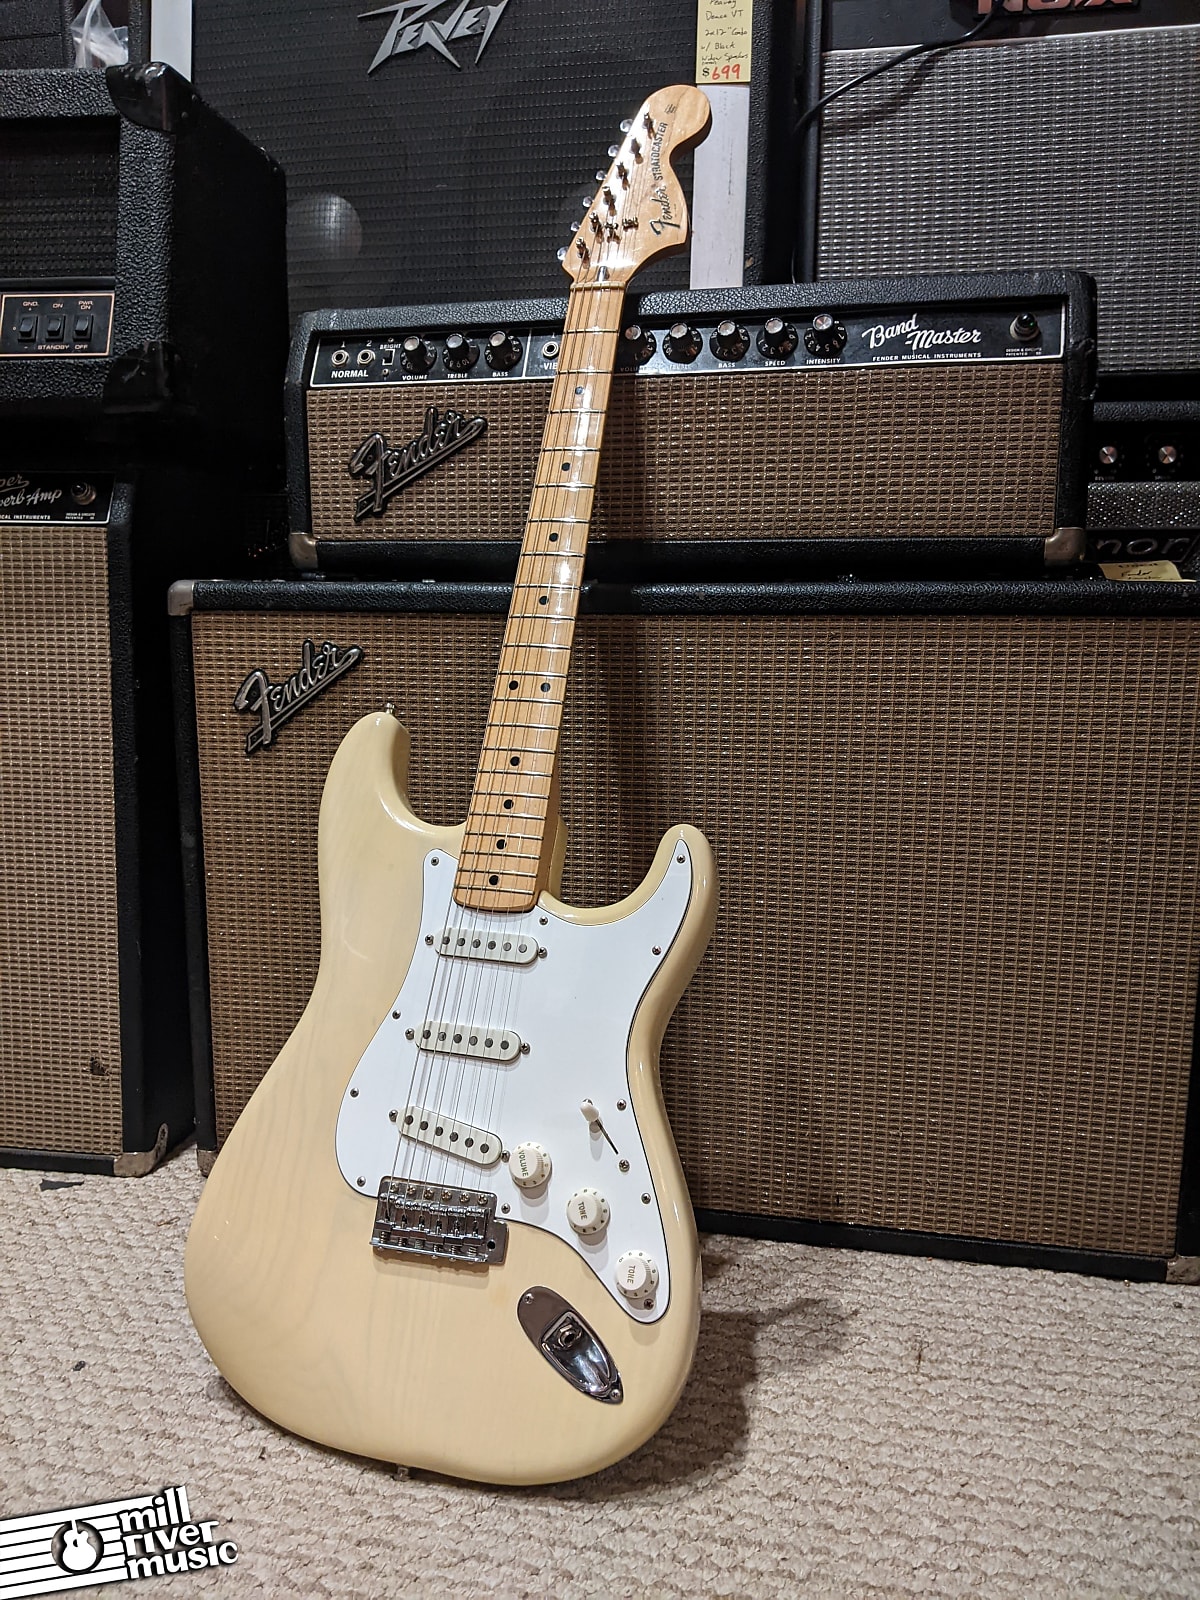 Fender Stratocaster Custom Mary Kay Blonde Maple Neck 1975 w/ G&G Case